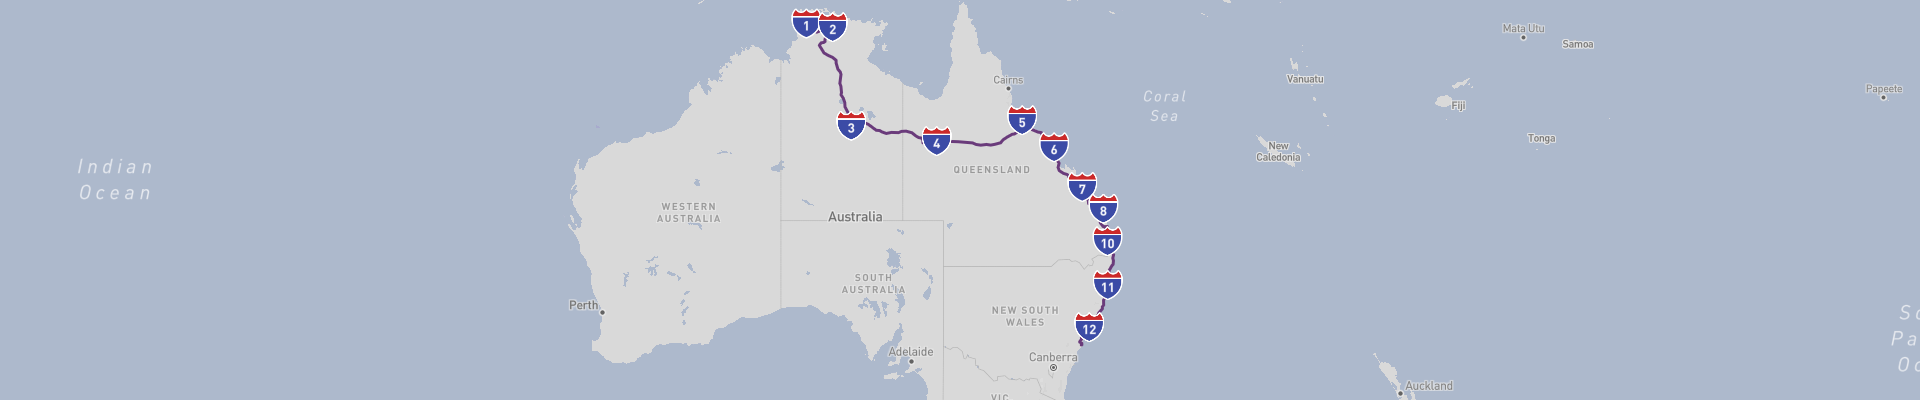 Darwin to Sydney Road Trip